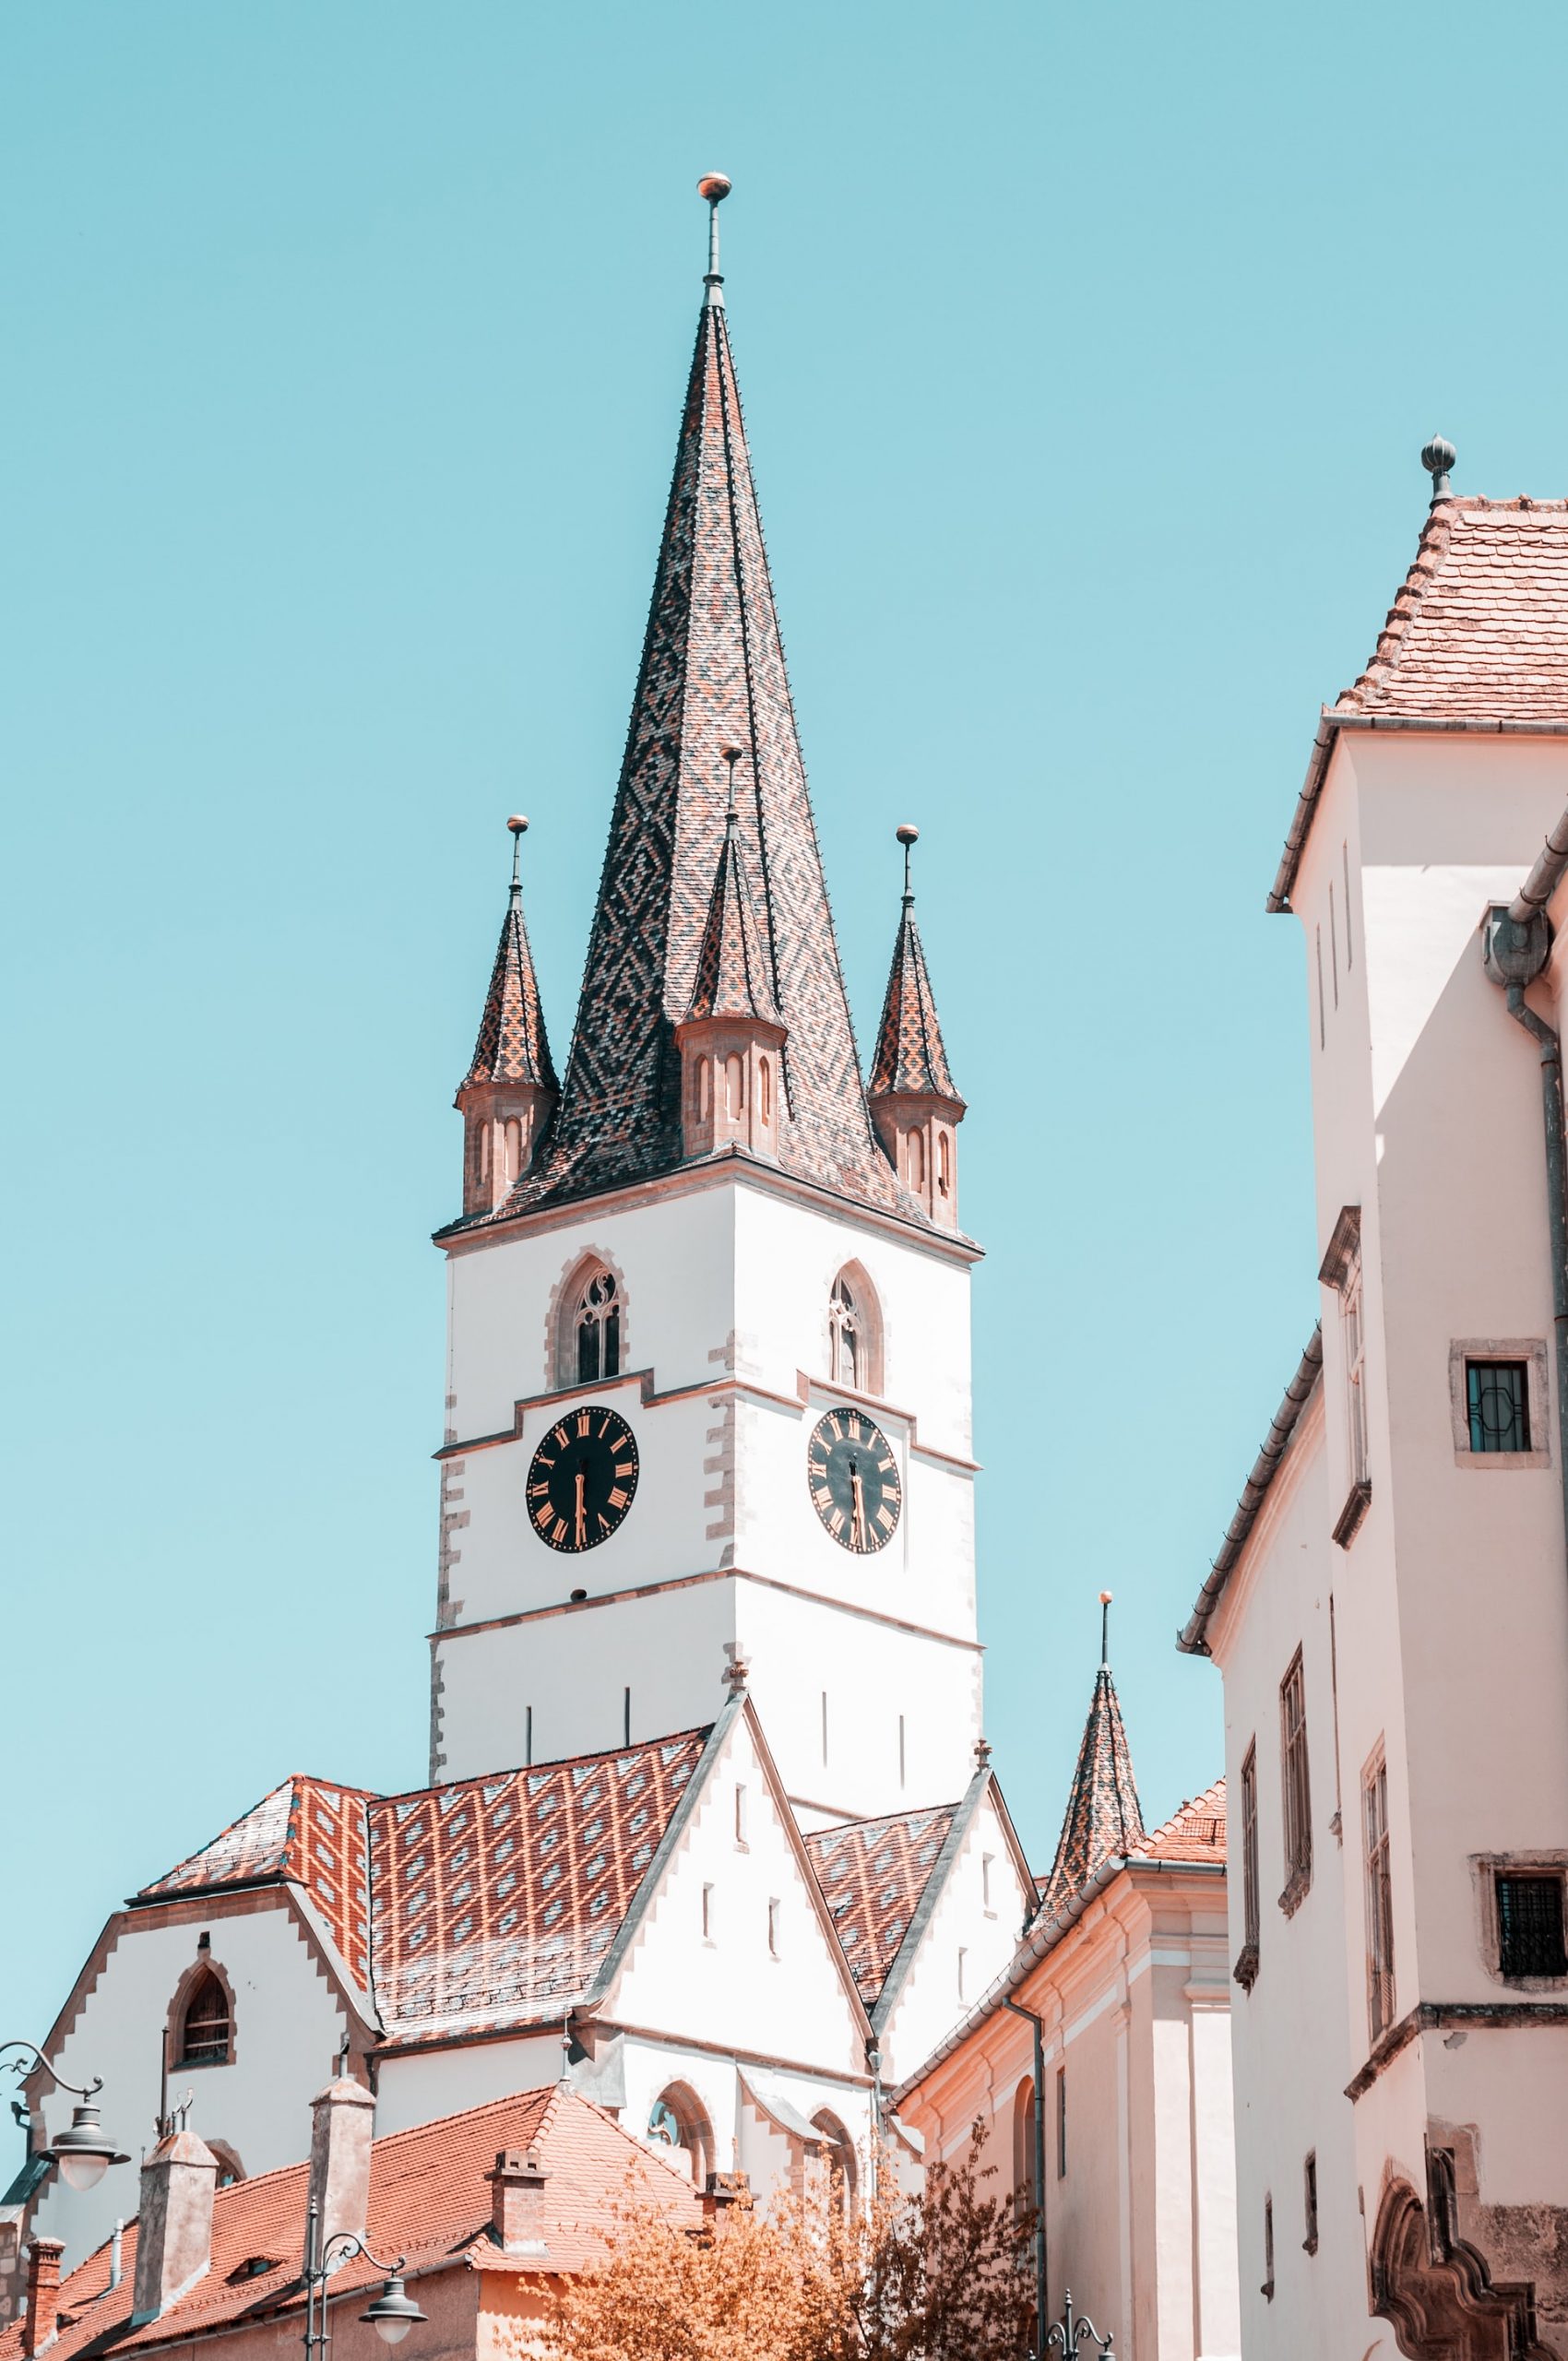 Catedrala Evanghelică din Sibiu este unul dintre cele mai notorii repere ale orașului